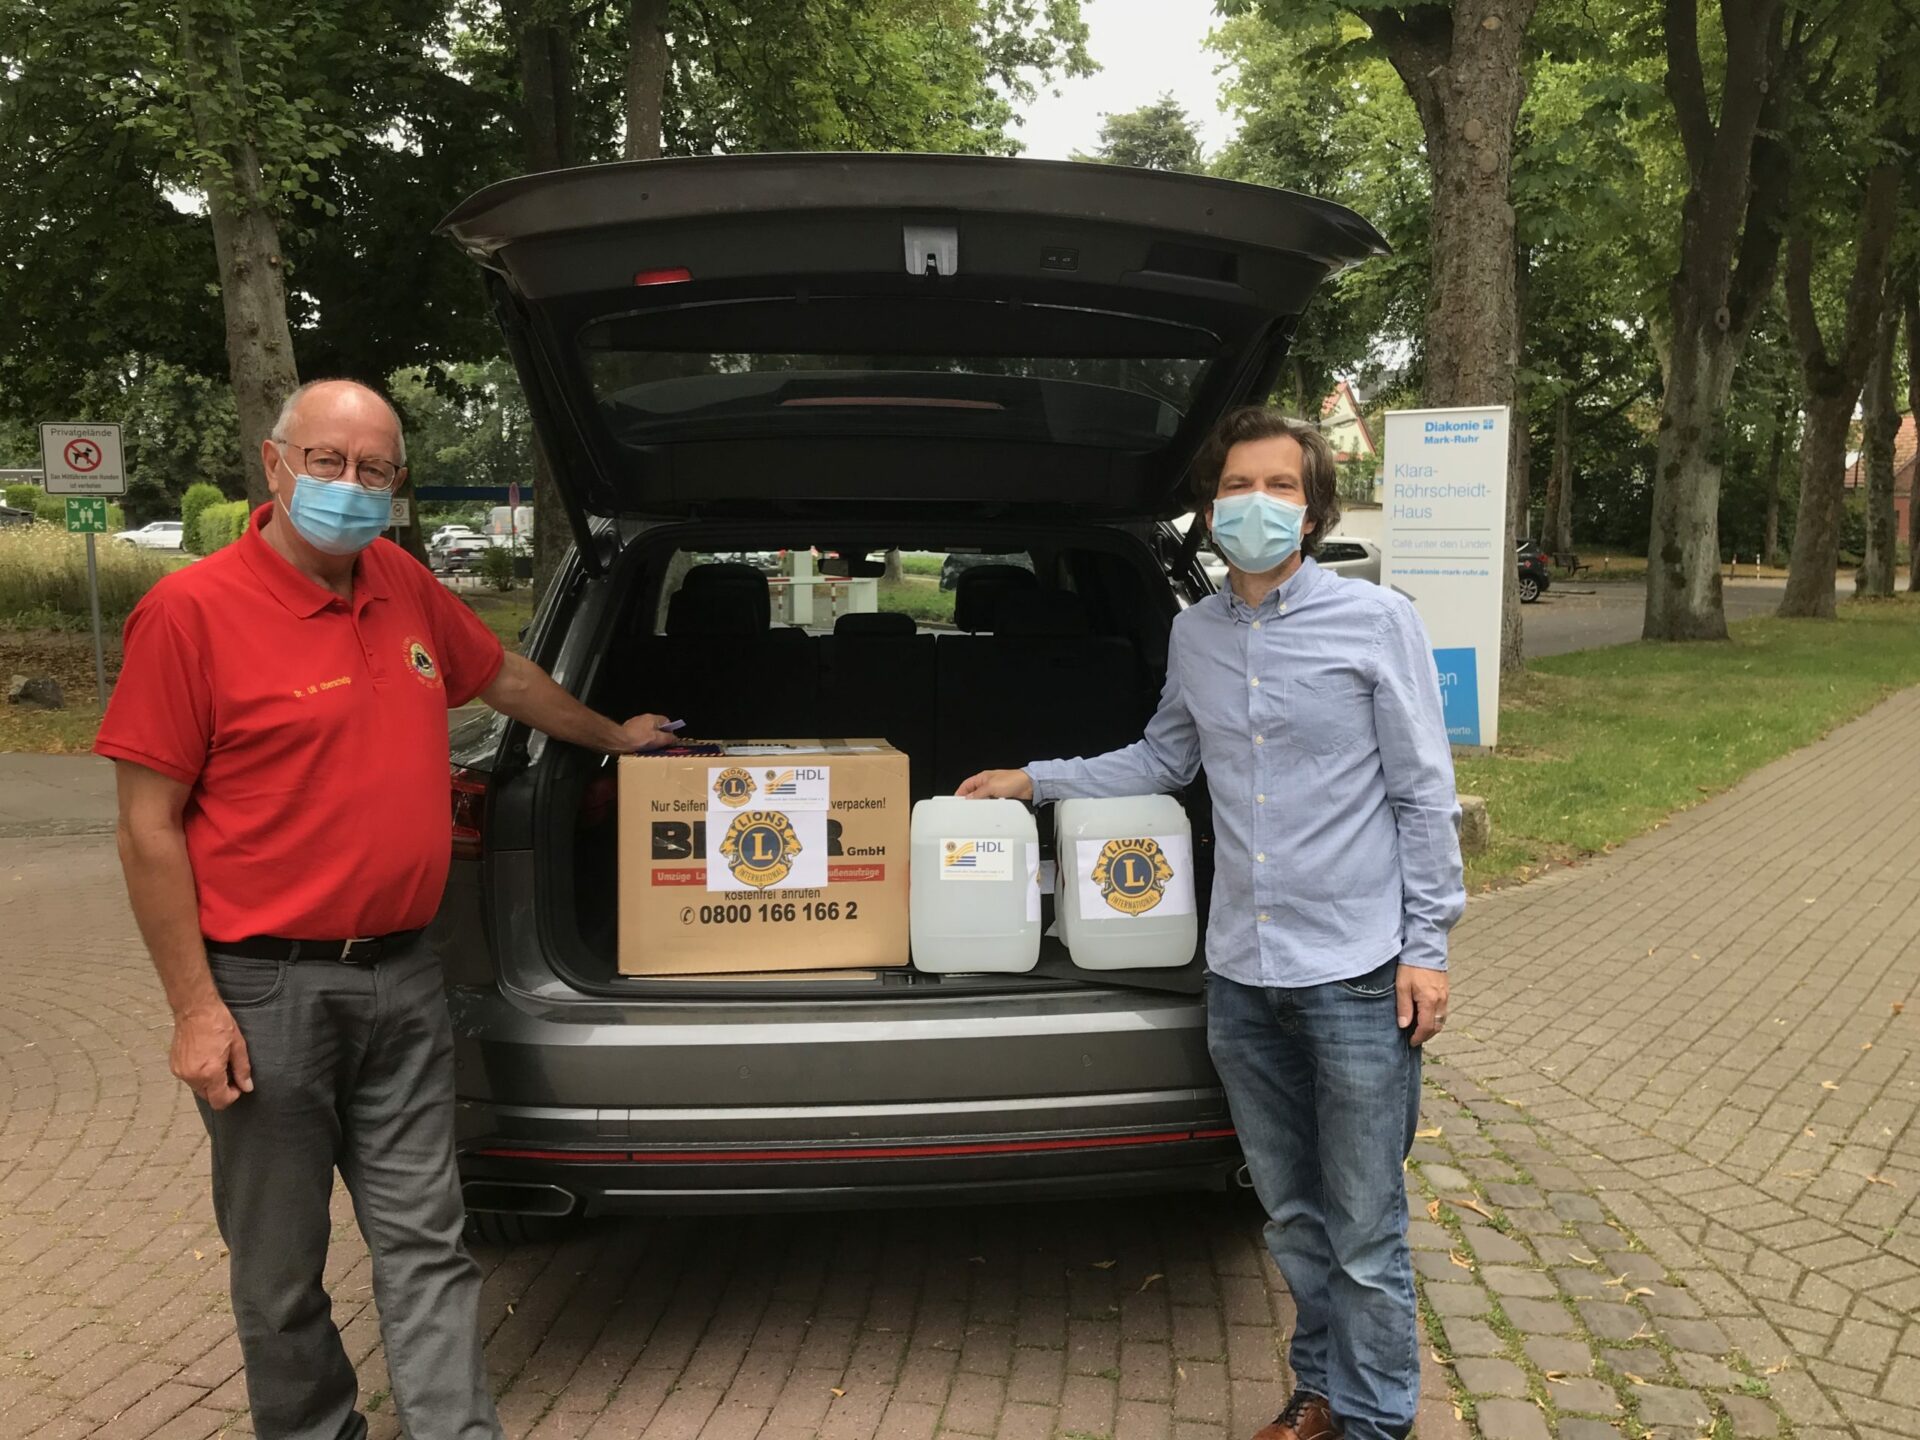 Lions Club Werne spendet Schutzausrüstung an Klara-Röhrscheidt-Haus